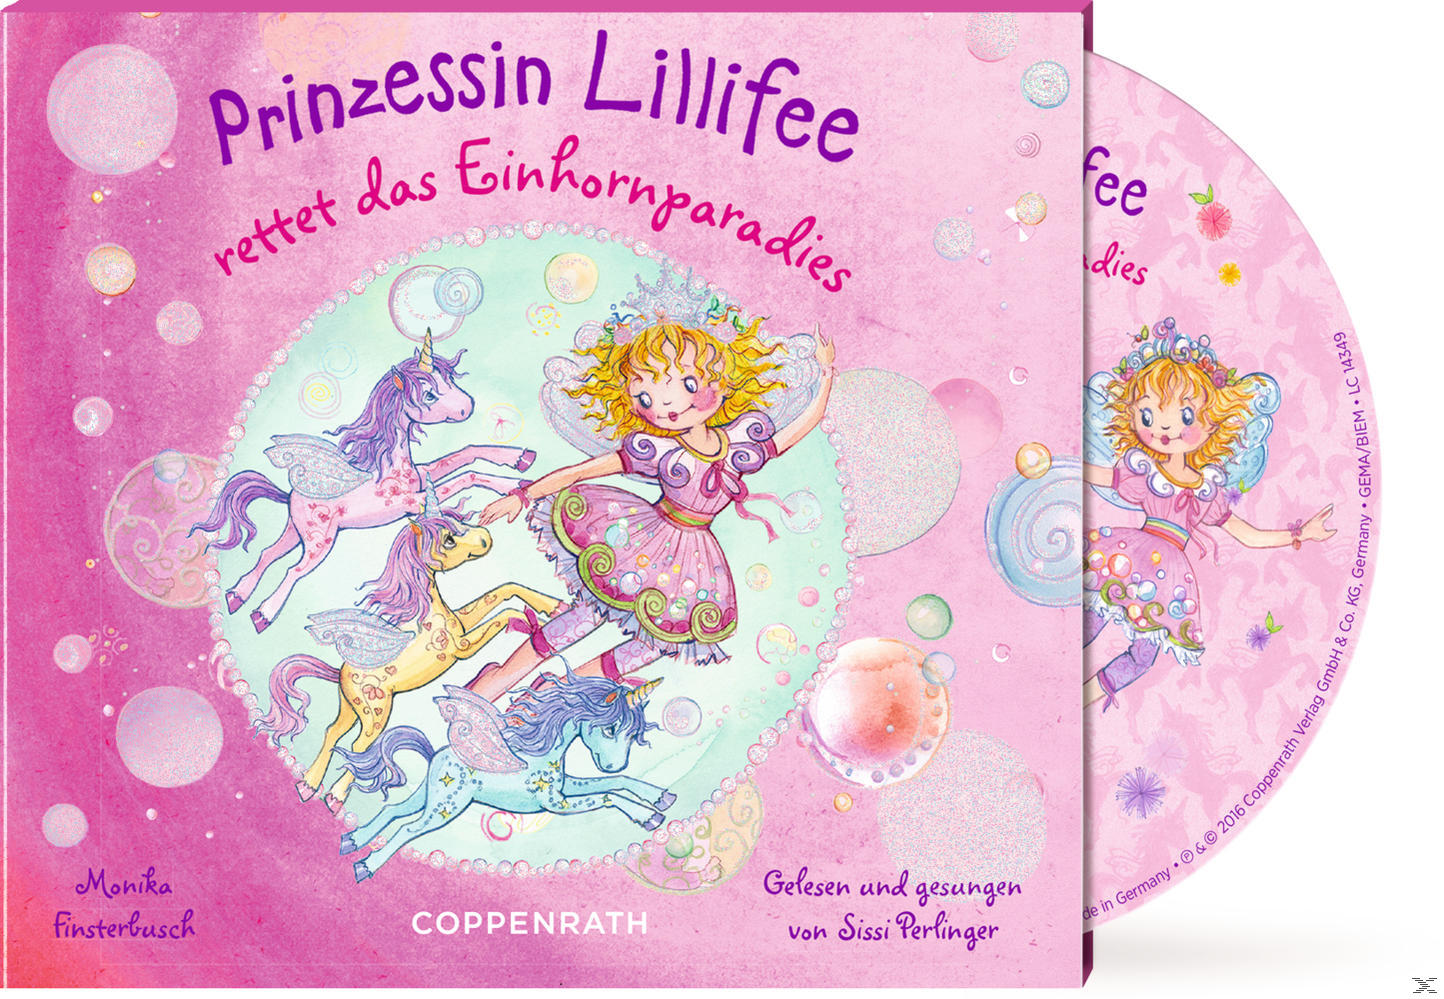 Prinzessin Lillifee rettet das Einhornparadies - (CD)